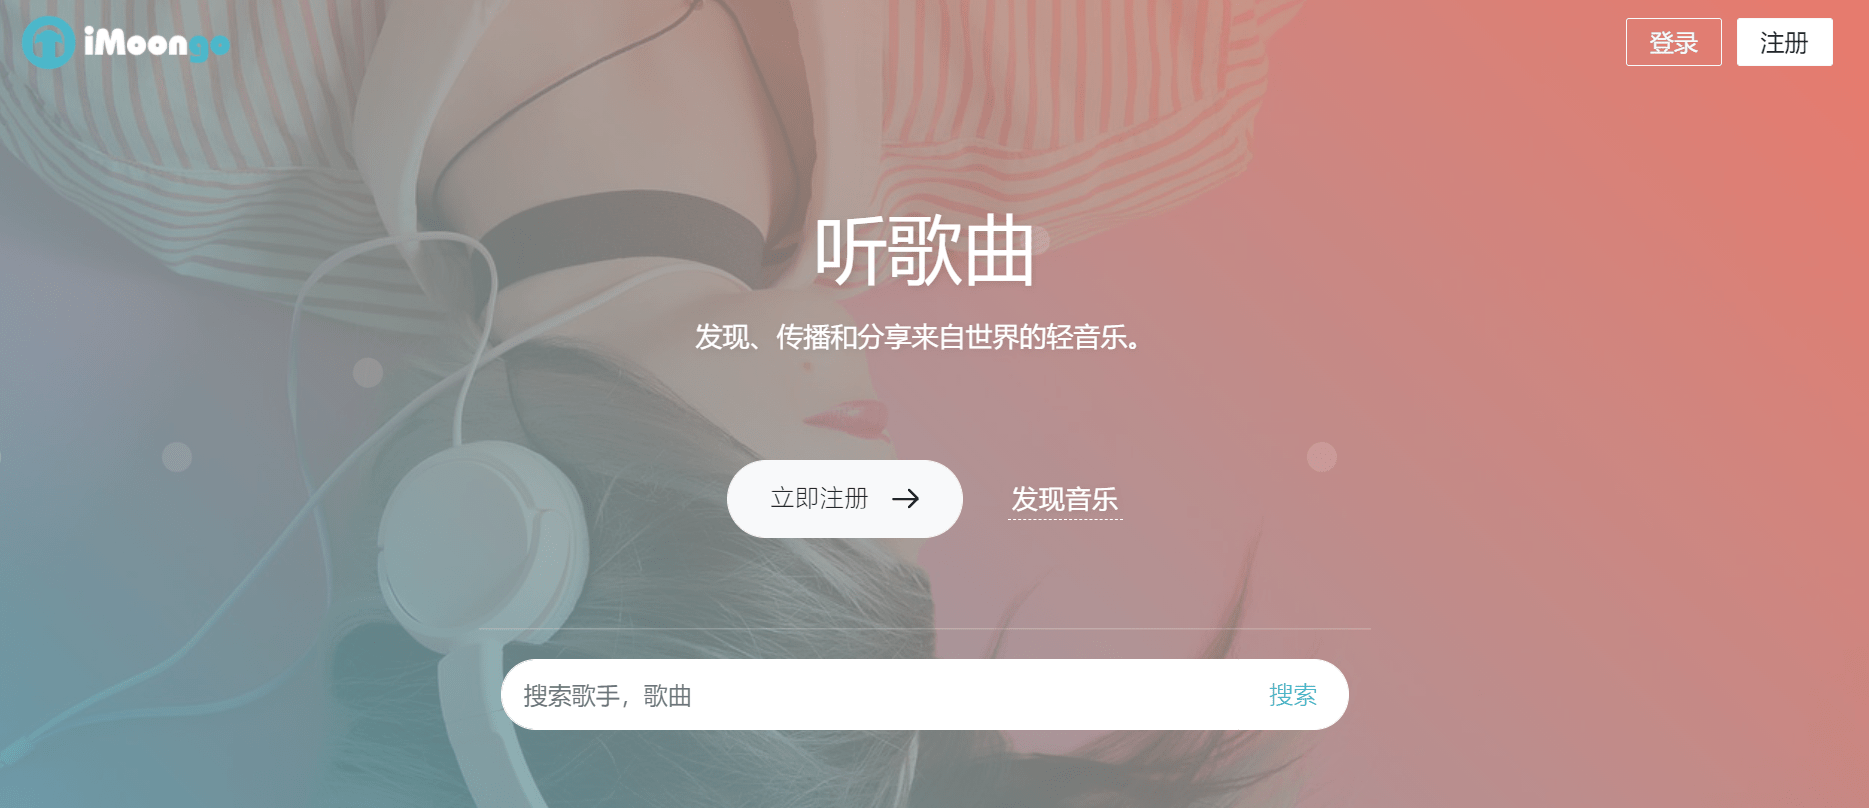 米乐m69个无损音乐下载平台全网音乐免费听随便下(图5)